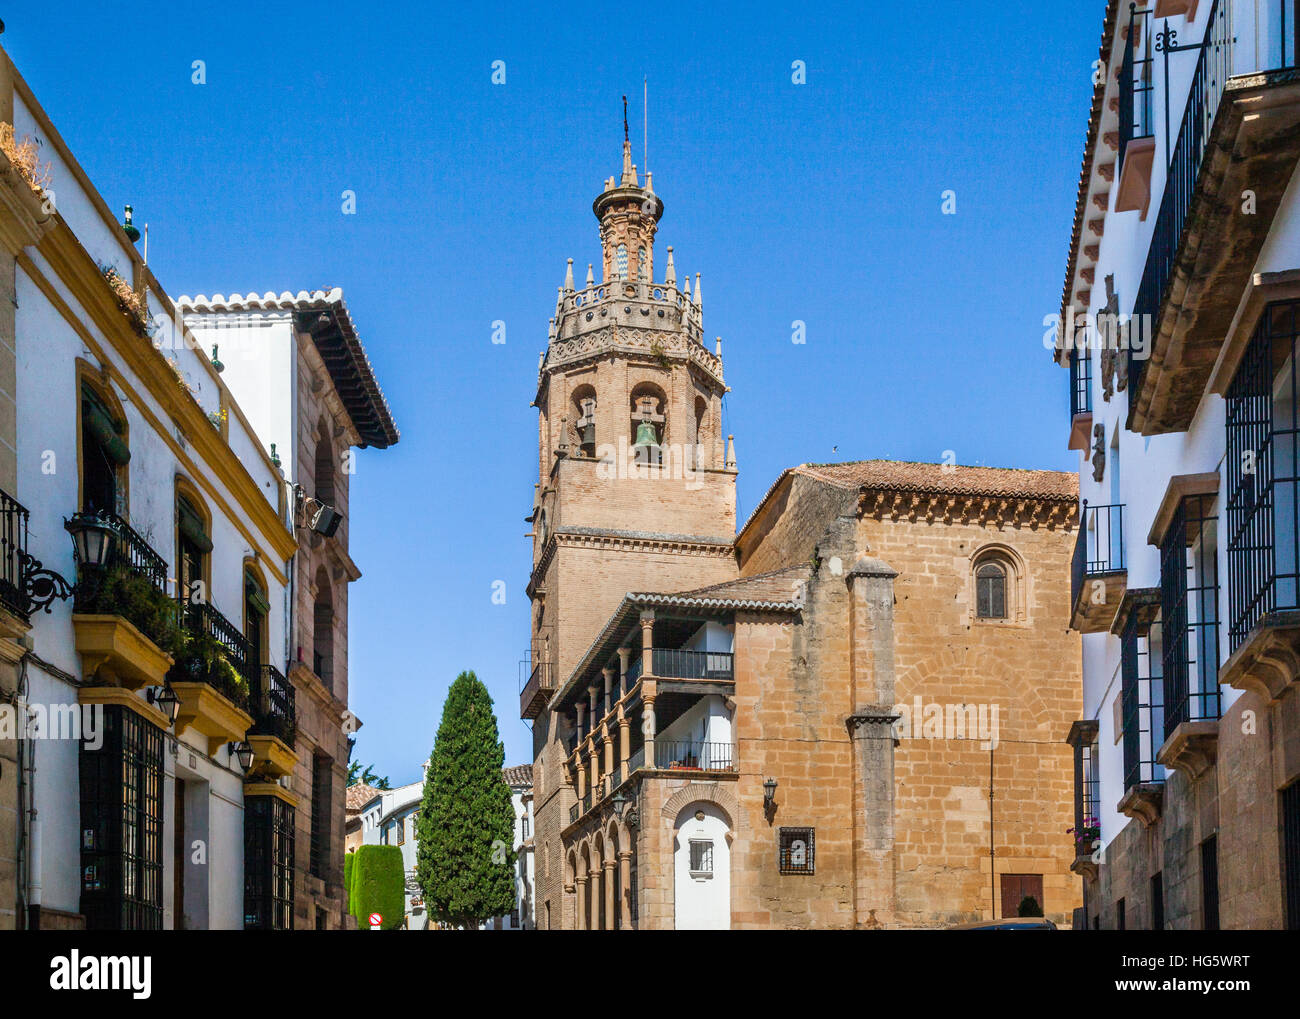 España, Andalucía, provincia de Málaga, Ronda, Iglesia de Santa María la Mayor (Parroquia Santa Maria alcalde), originalmente una mezquita musulmana del siglo XIV. Foto de stock